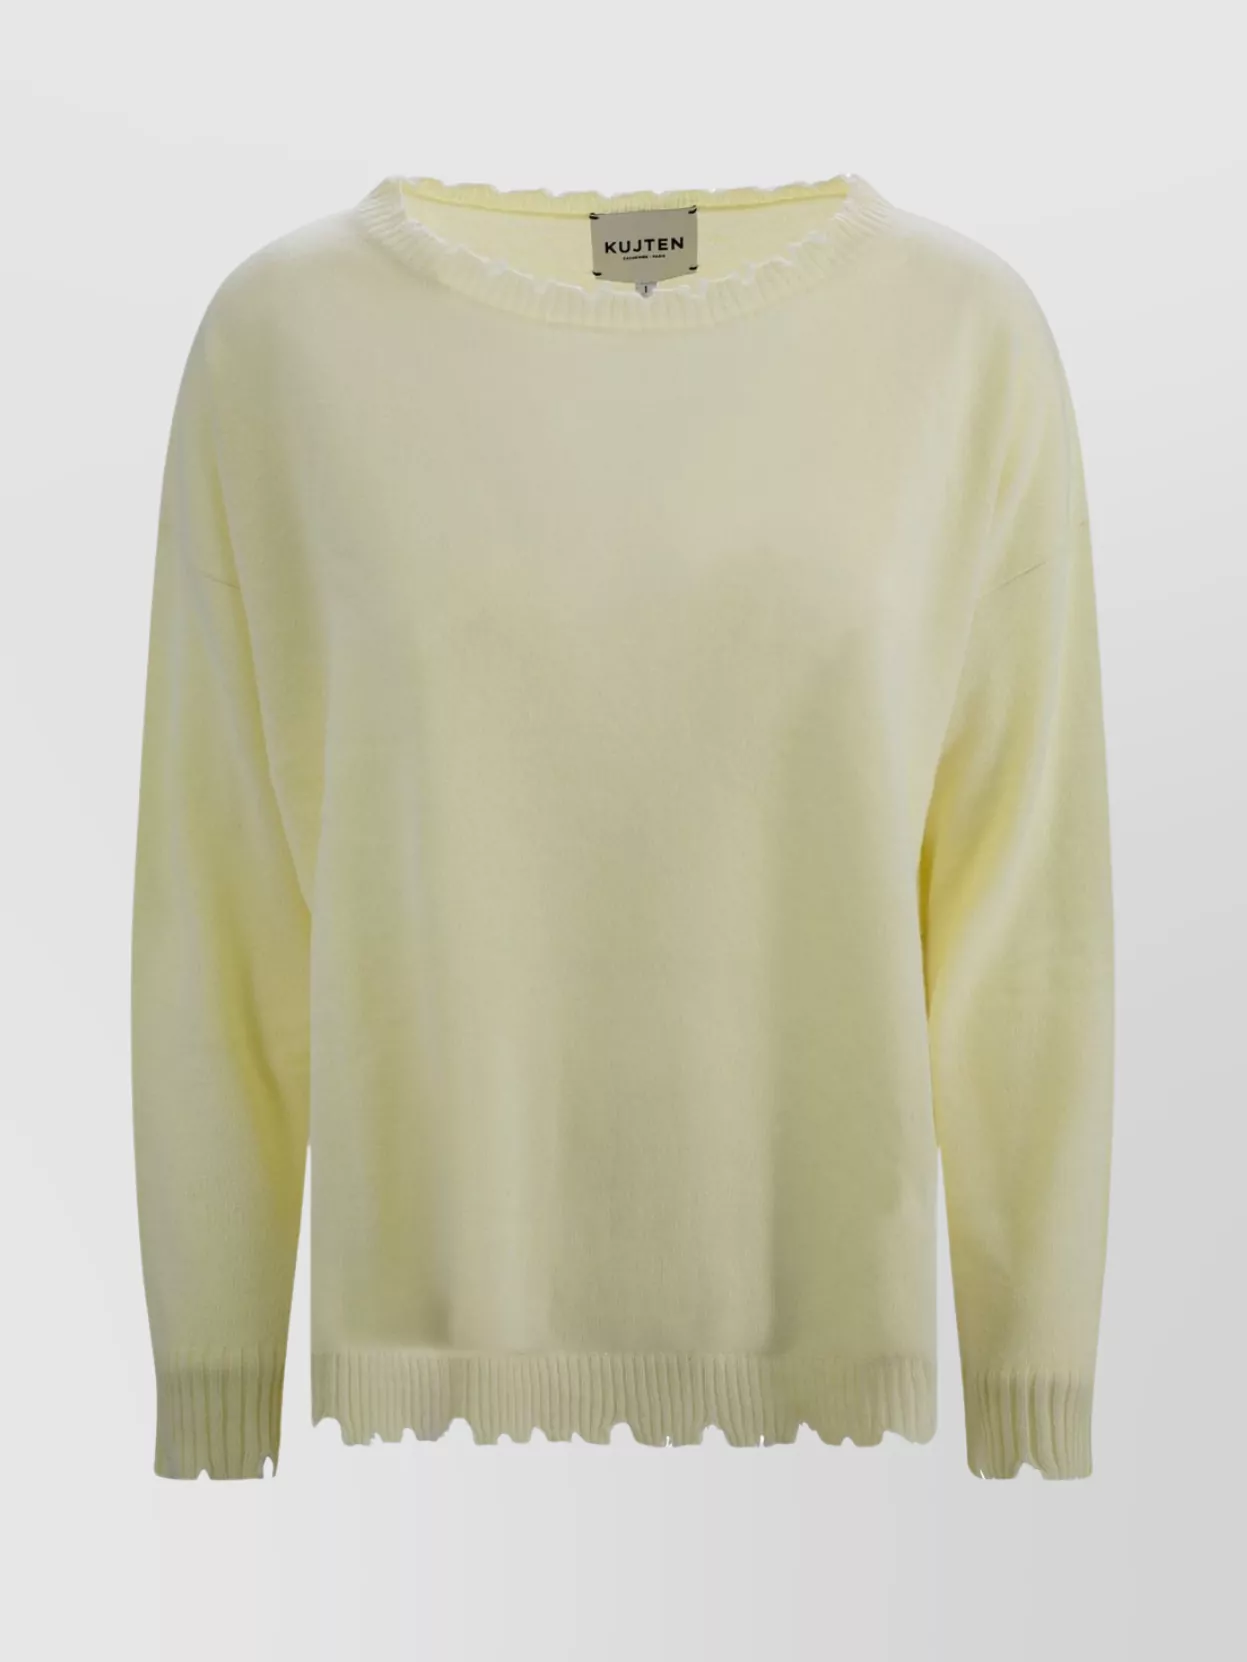 Shop Kujten Cashmere Sweater Round Neck Women